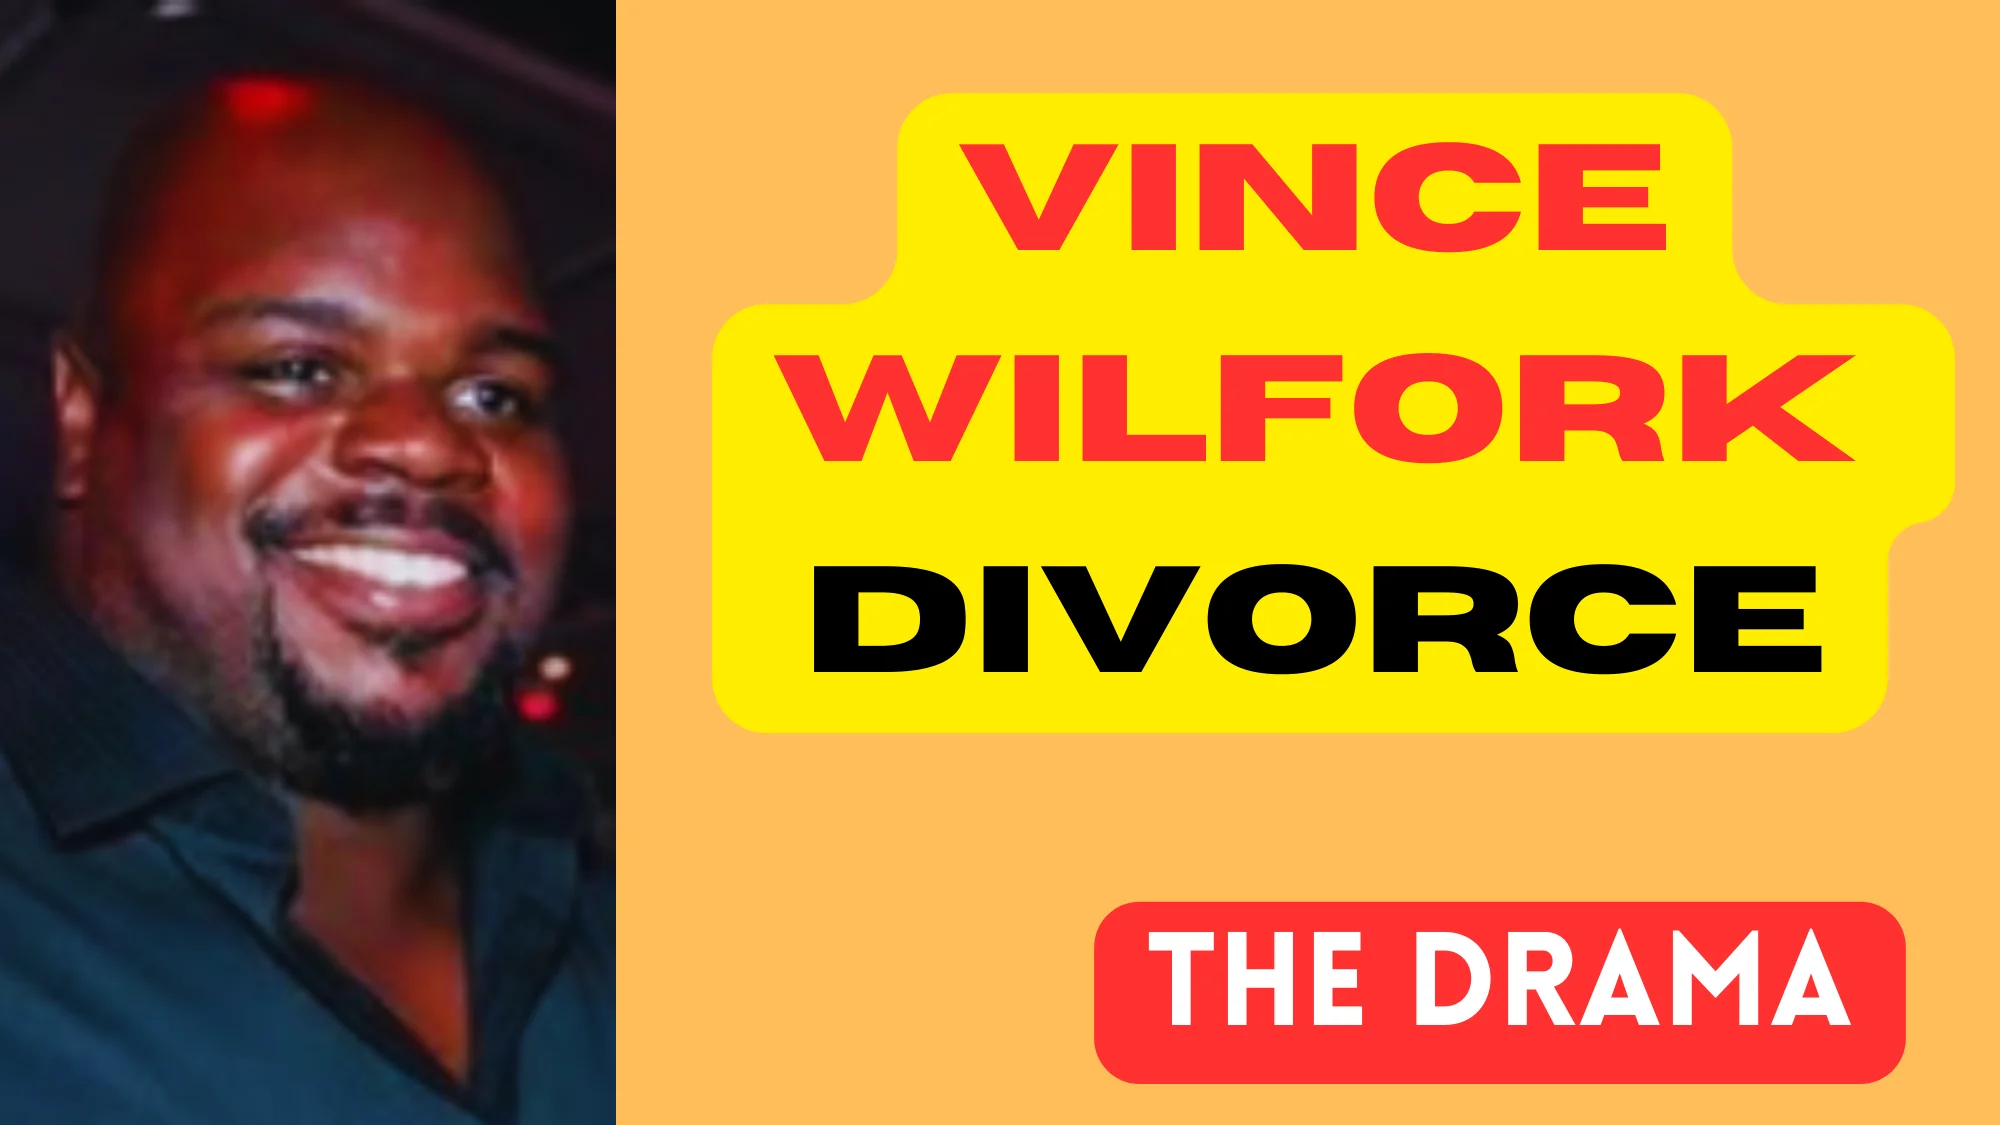 Vince Wilfork Divorce